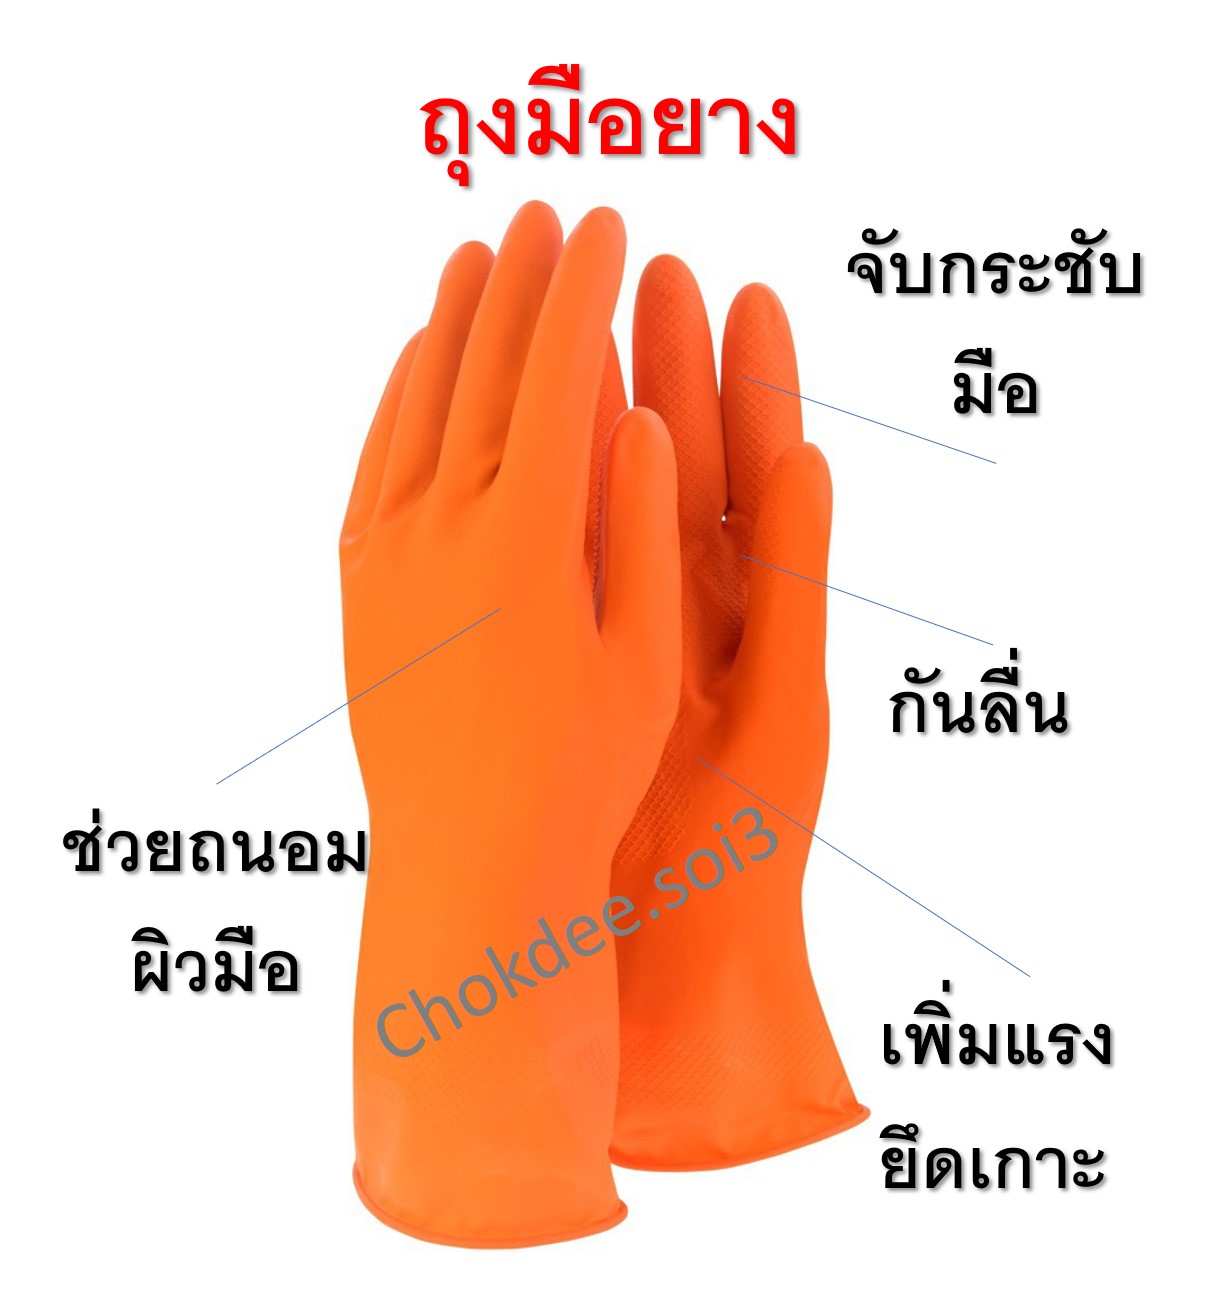 ถุงมือยาง ถุงมือ สีส้ม คุณภาพดีเหมาะใช้ซักผ้า ล้างจาน หรือทำความสะอาดบ้านอื่นๆ ทนยืดหยุ่นไม่ฉีกขาด ถนอมมือคุณแม่บ้านและพ่อบ้าน